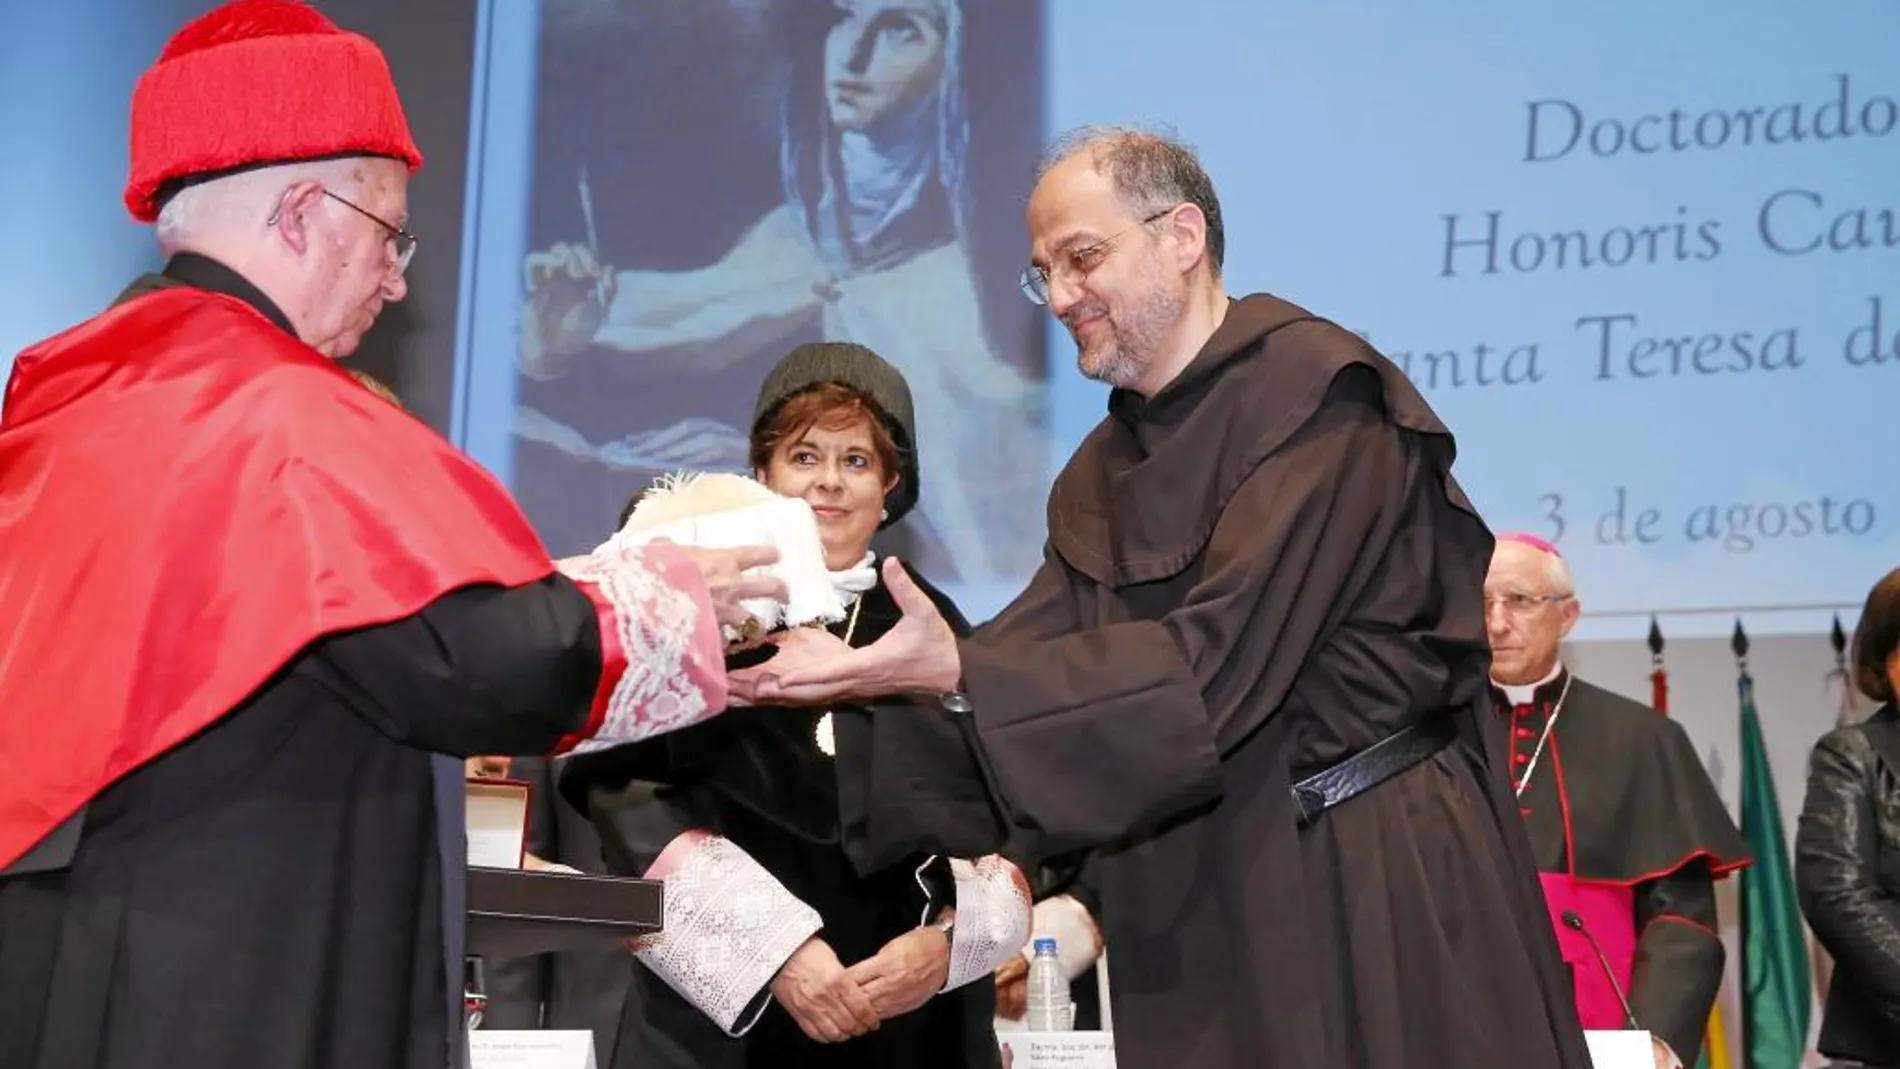 Saverio Cannistrà recogió el birrete laureado, excelencia de la dignidad doctoral, de manos del cardenal arzobispo Cañizares